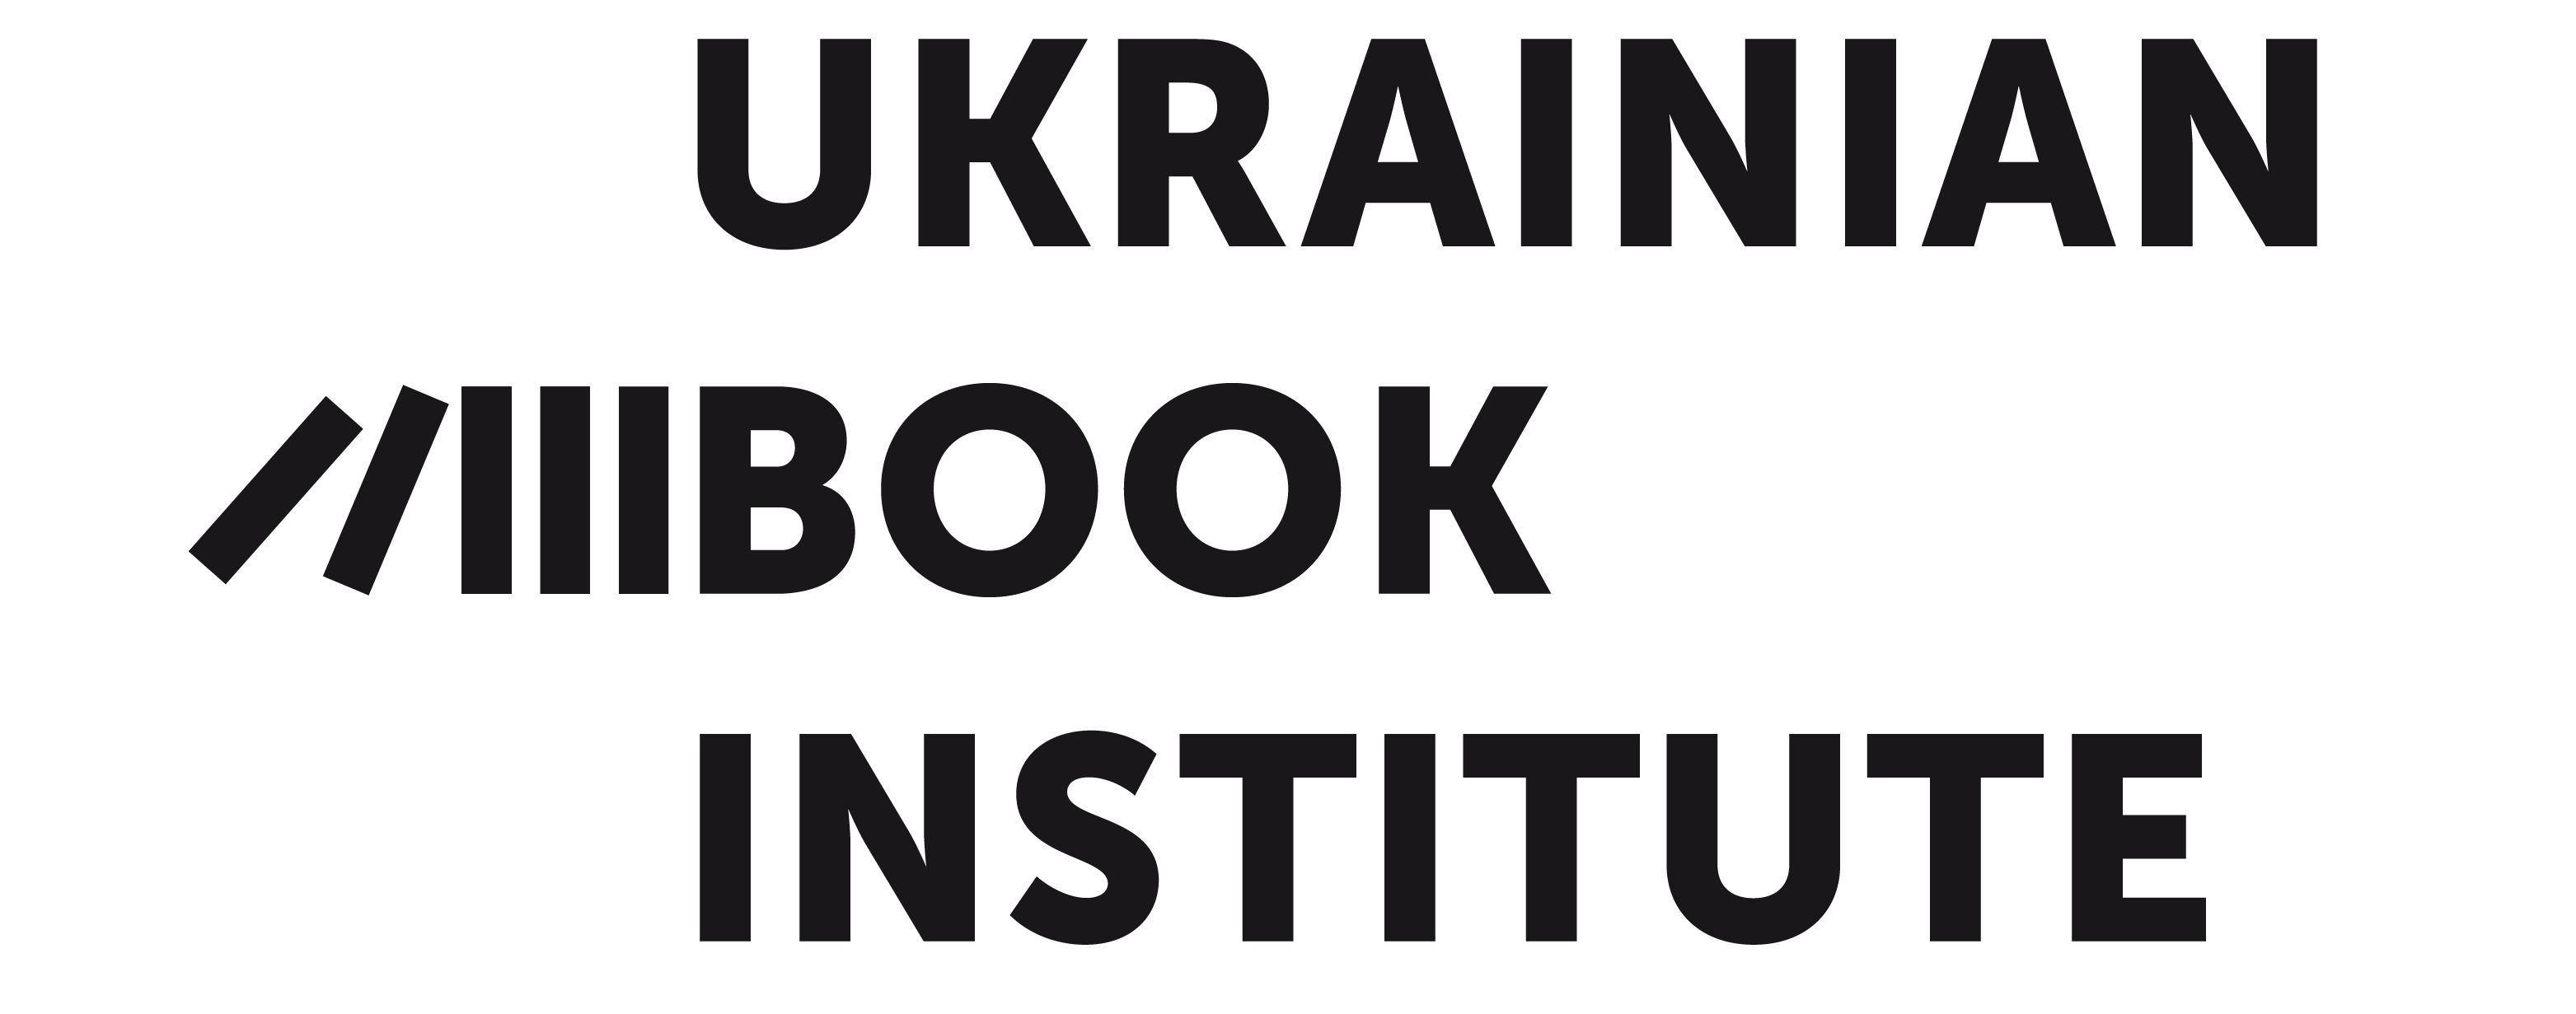 Ukrainian Book Institute